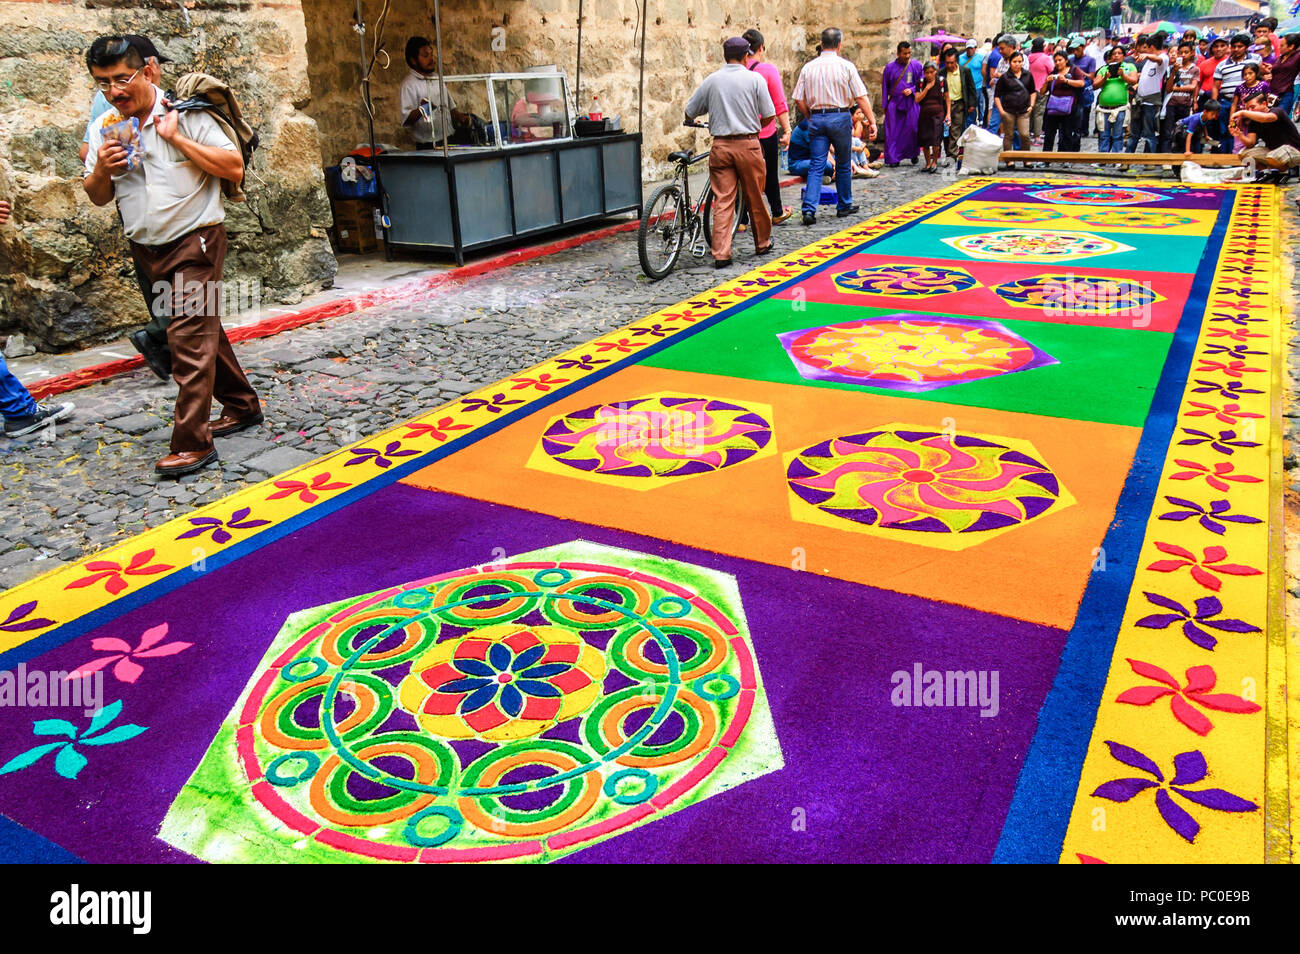 Antigua, Guatemala - April 2, 2015: Gefärbte Sägespäne Gründonnerstag Prozession Teppich in der Stadt mit dem berühmtesten Feierlichkeiten zur Karwoche in Lateinamerika. Stockfoto